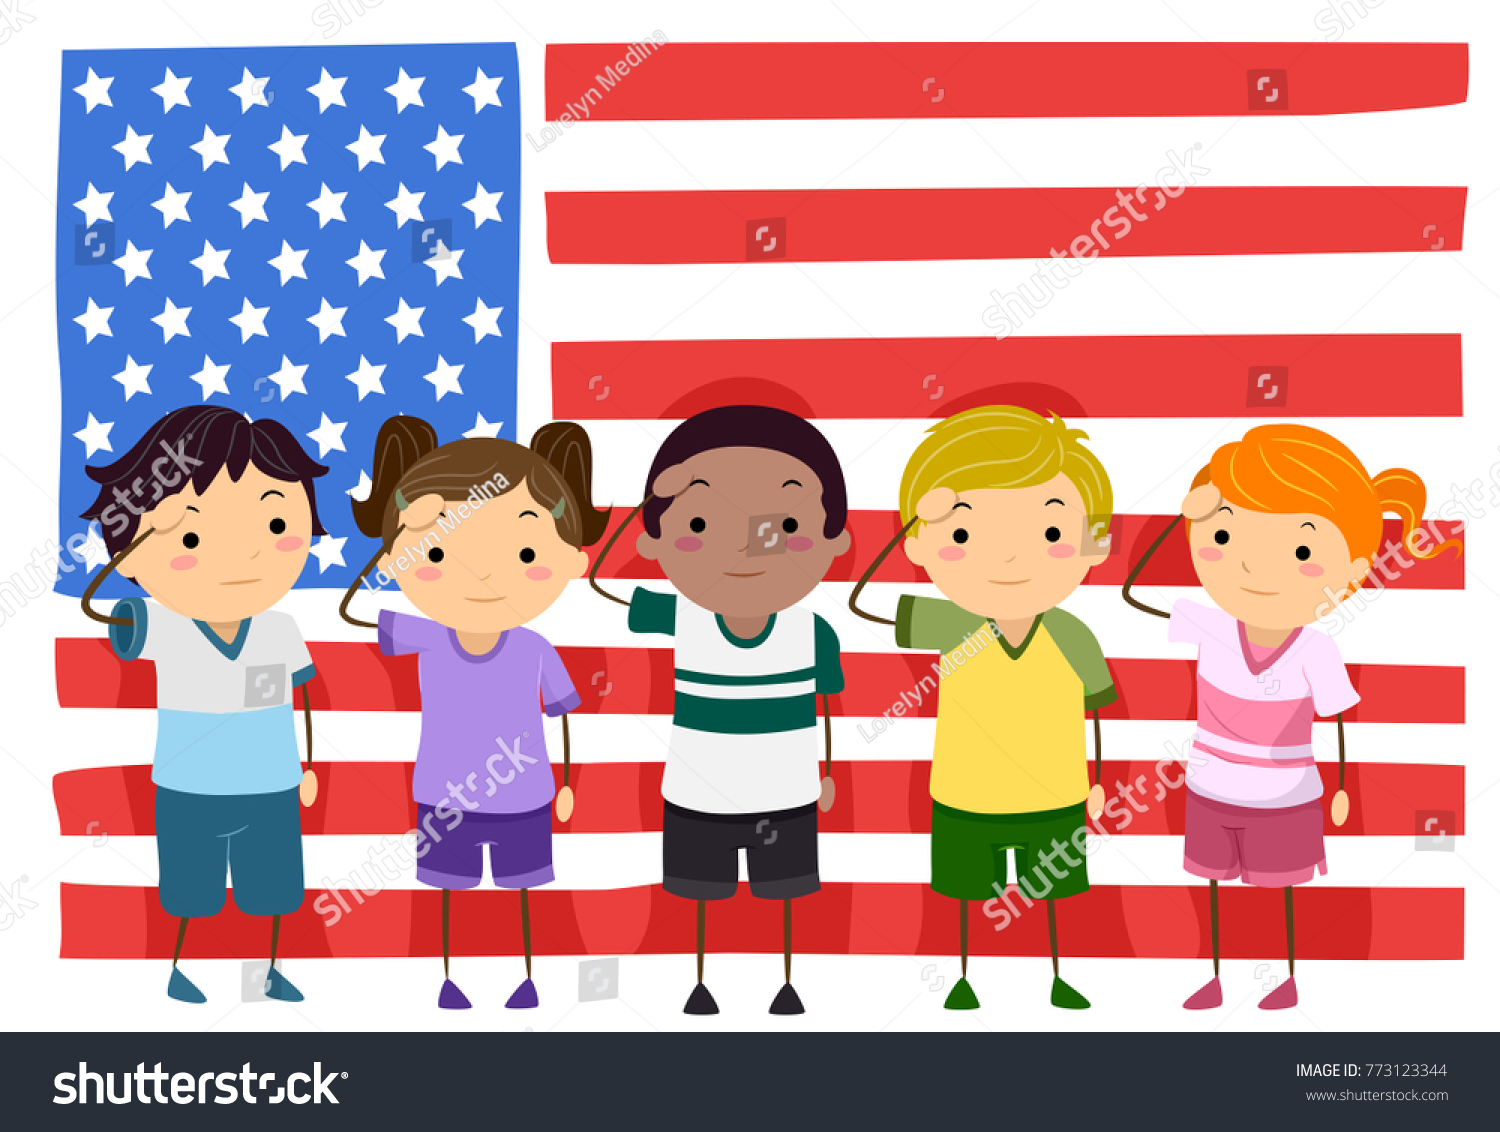 アメリカ国旗の前で挨拶をするステックマンの子どもたちのイラスト のベクター画像素材 ロイヤリティフリー